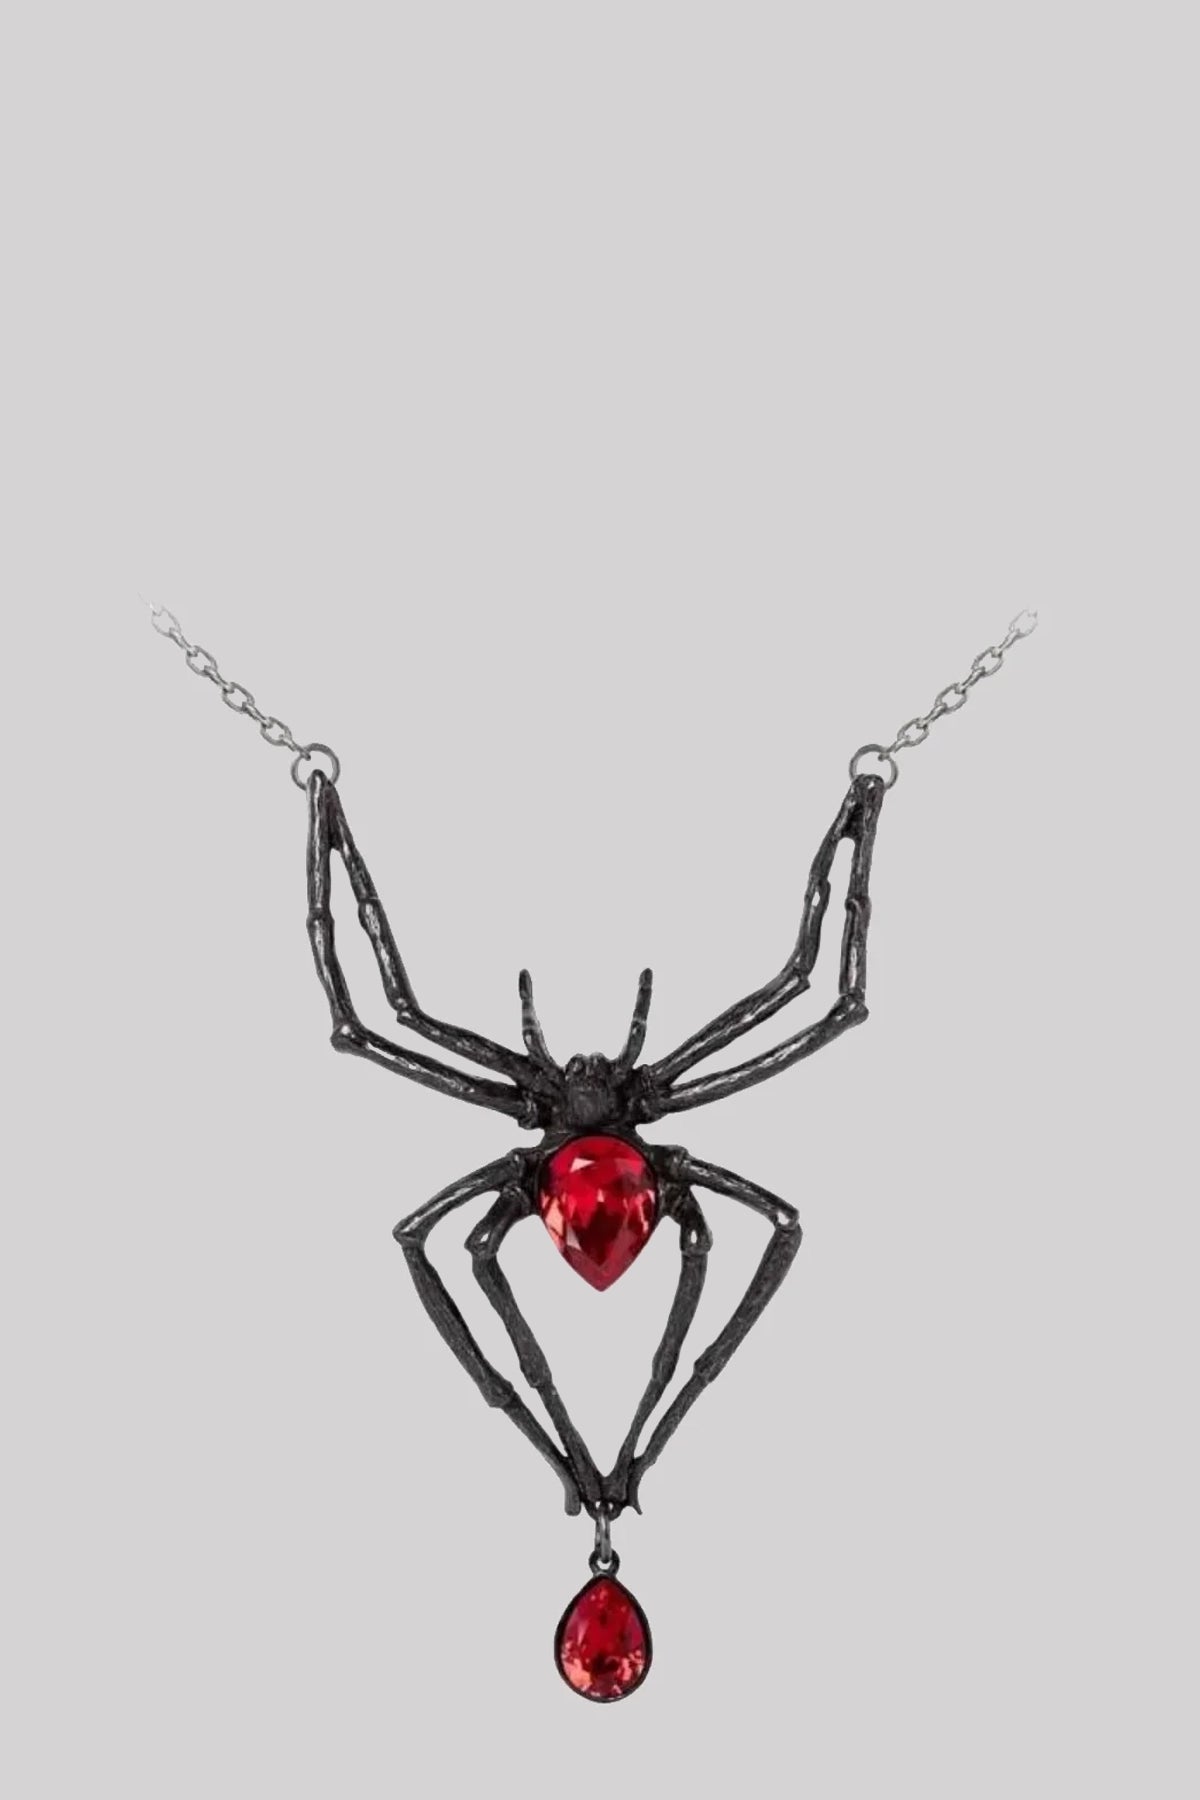 Alchemy England Black Widow Gothic Spider Necklace